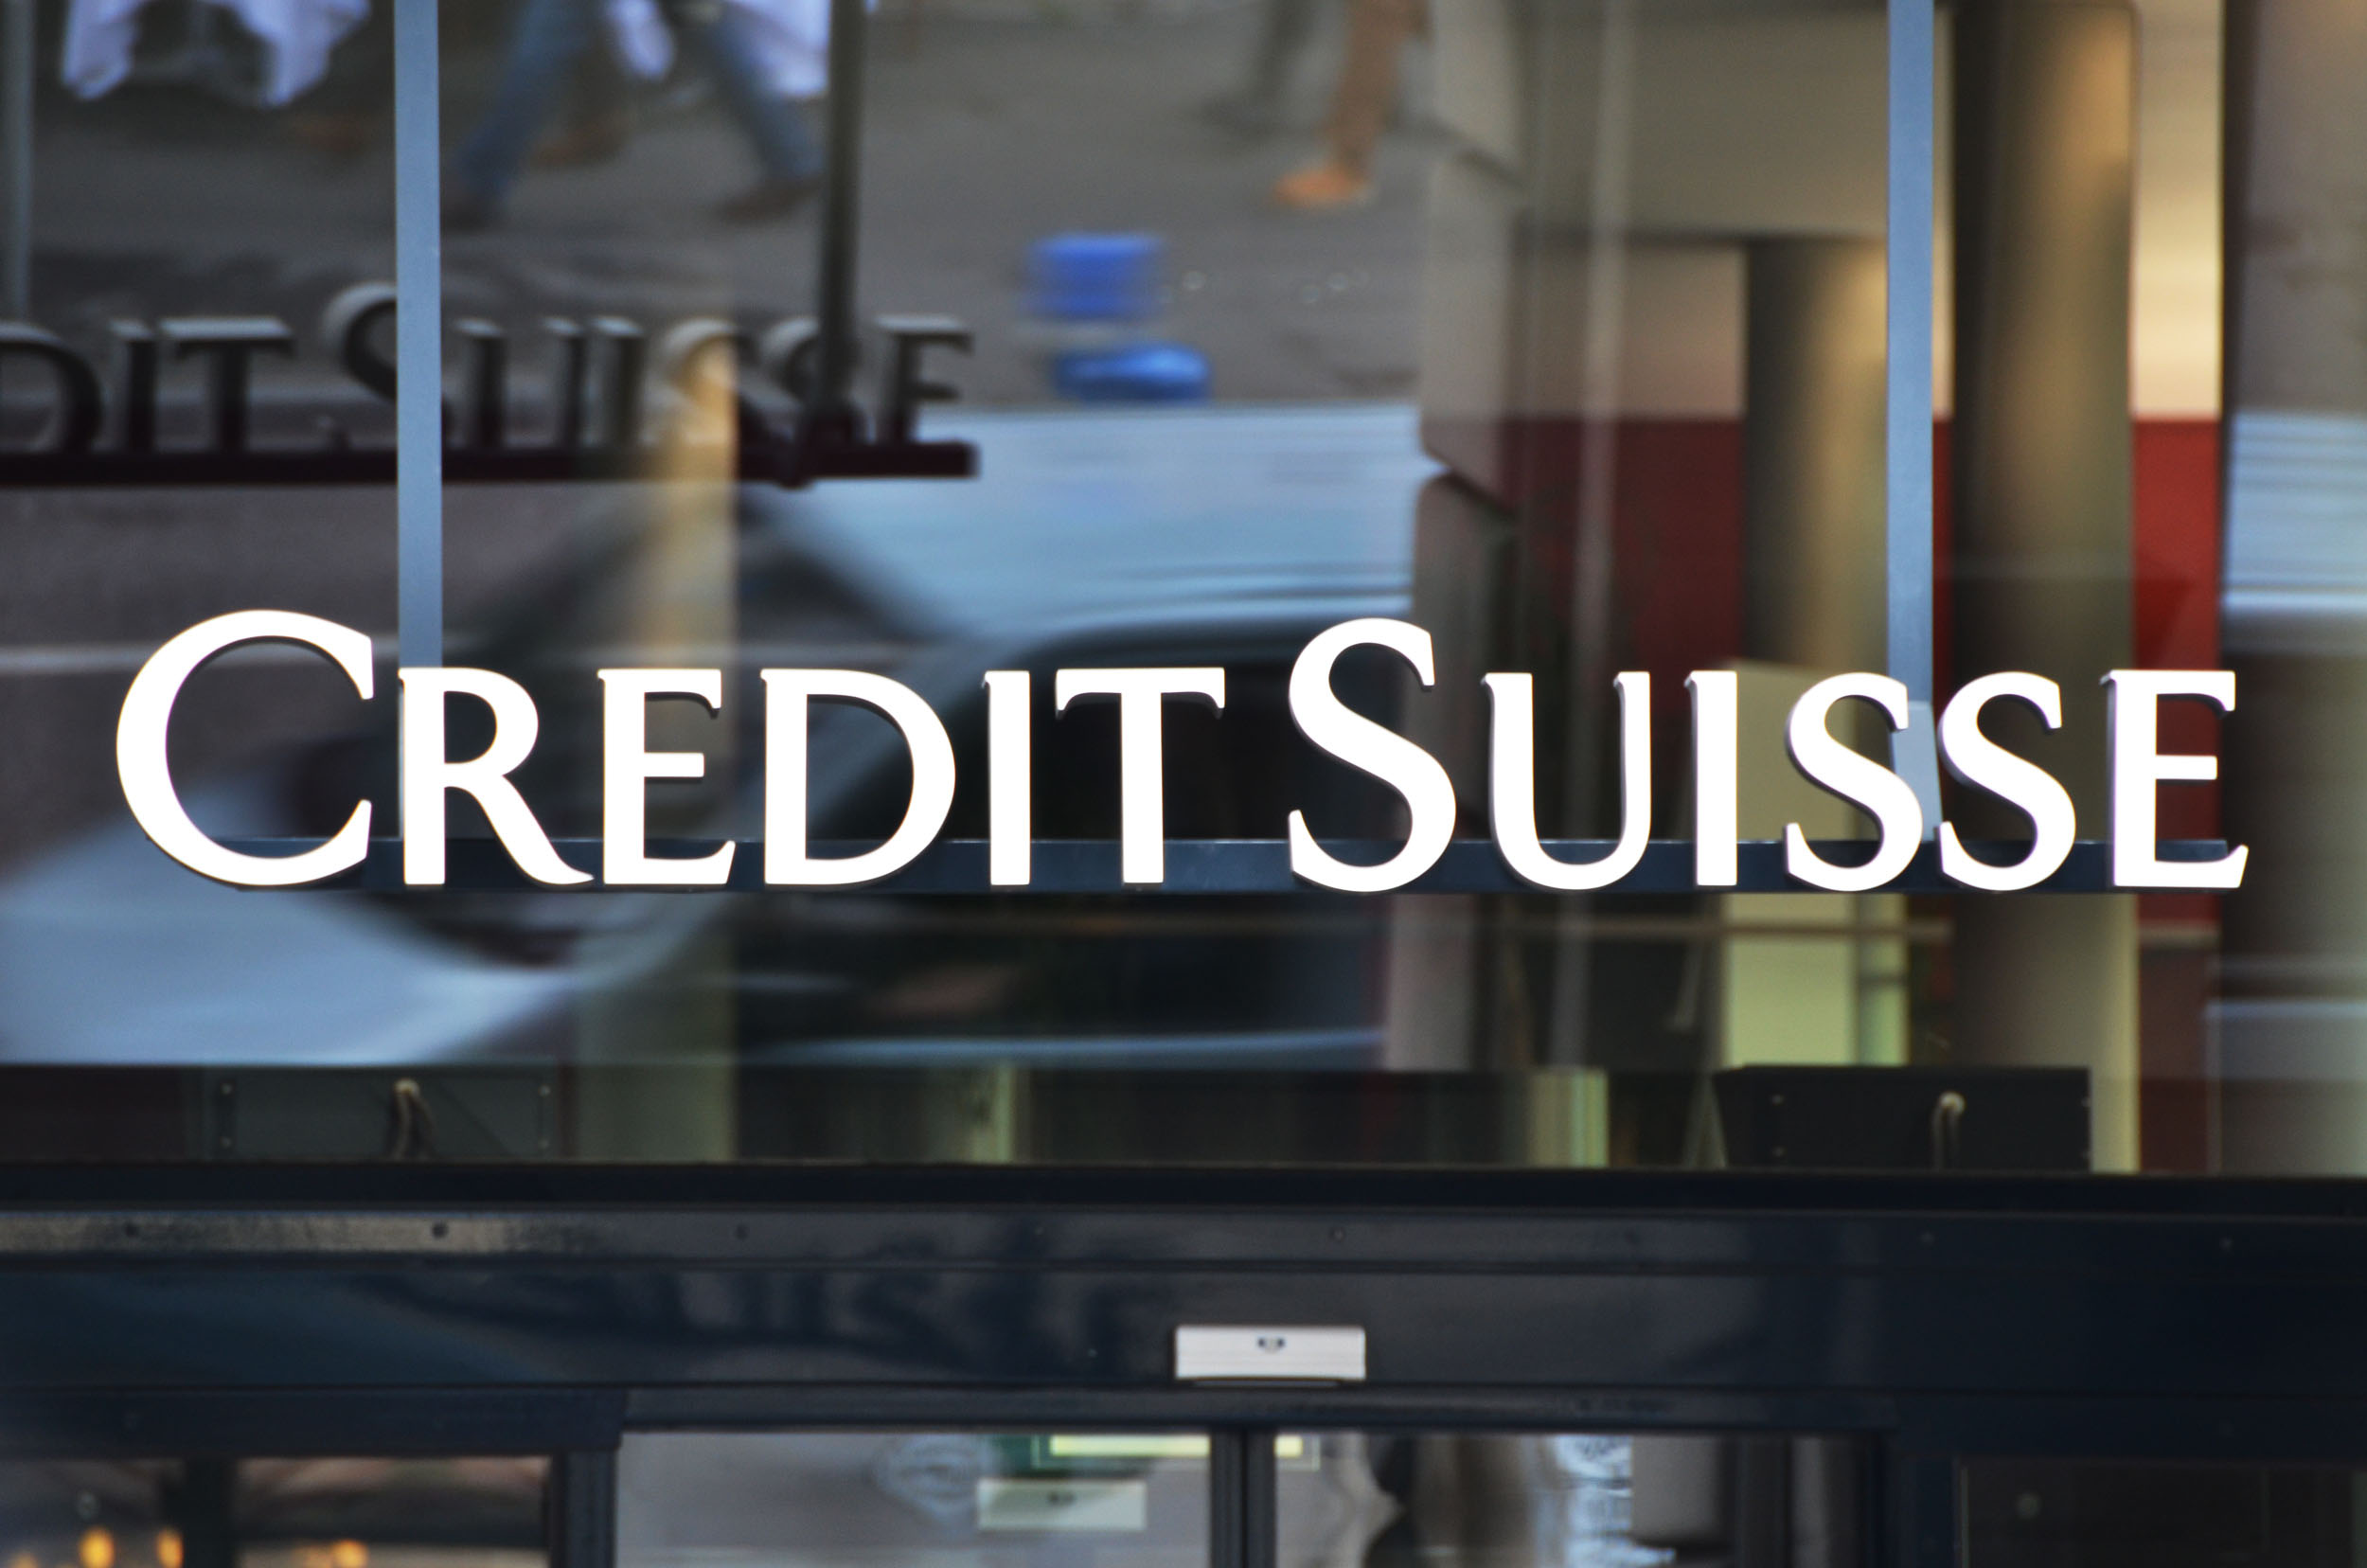 Credit Suisse weist ihre Finanzresultate weiterhin in Franken aus